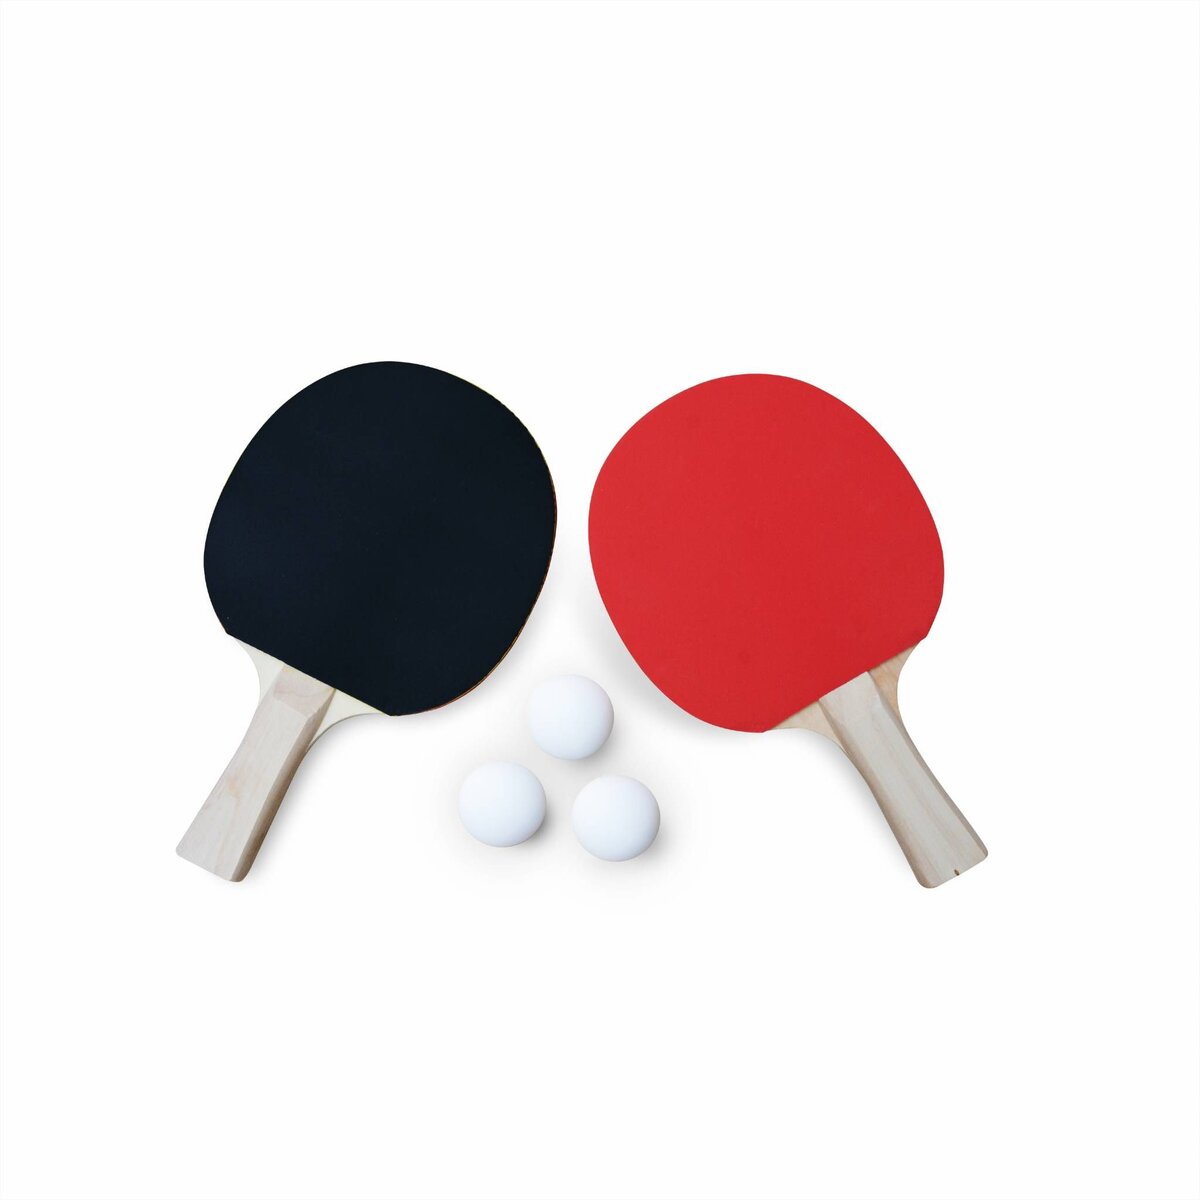 SWEEEK Table de ping pong INDOOR bleue - table pliable avec 2 raquettes et  3 balles. pour utilisation intérieure. sport tennis de table pas cher 